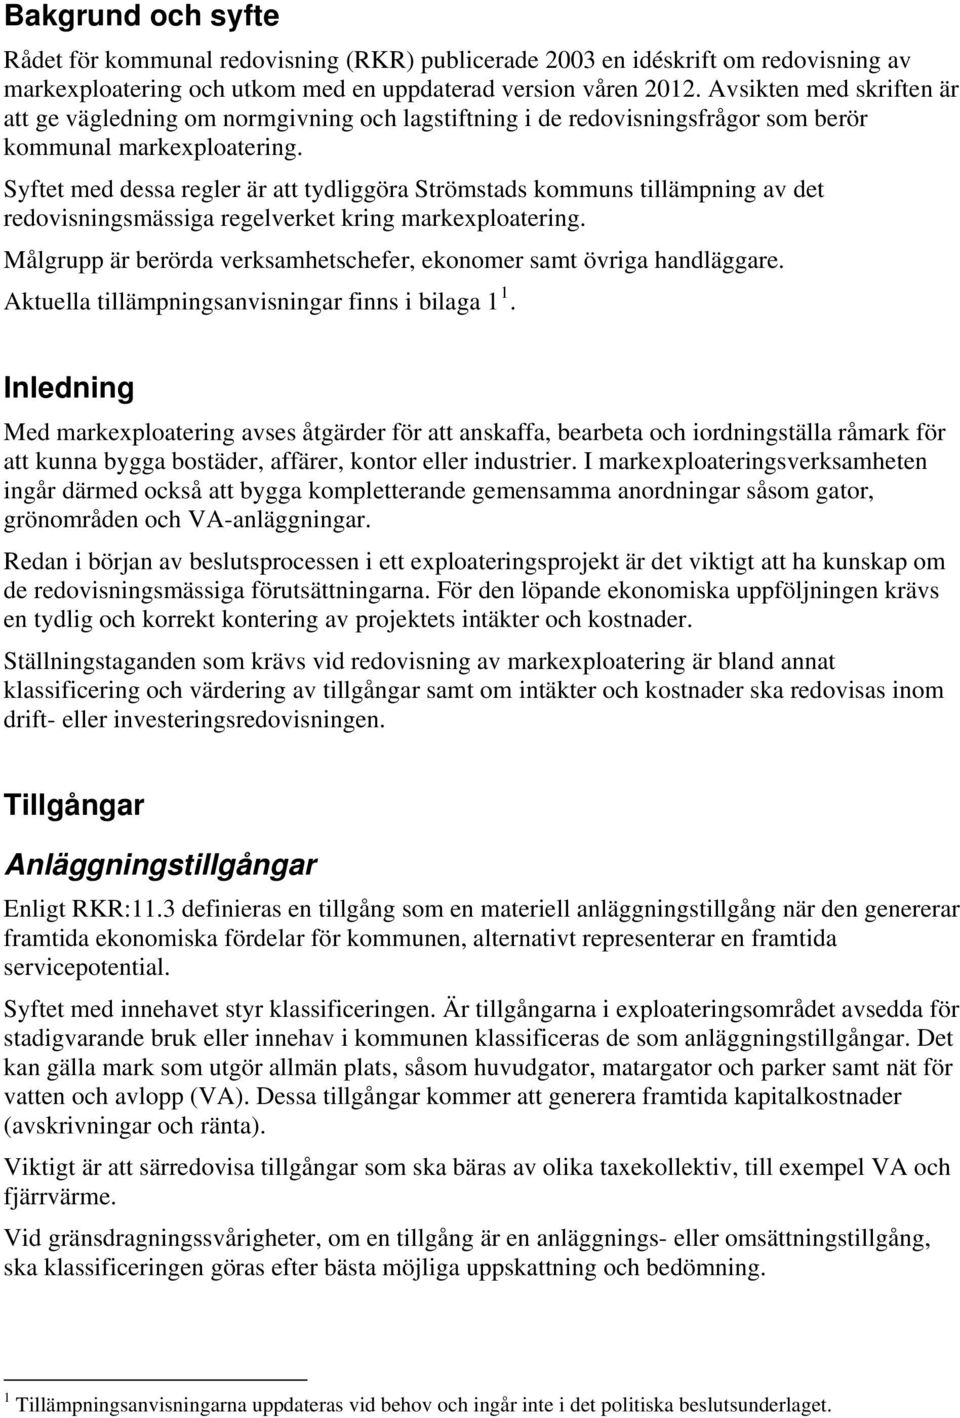 Syftet med dessa regler är att tydliggöra Strömstads kommuns tillämpning av det redovisningsmässiga regelverket kring markexploatering.